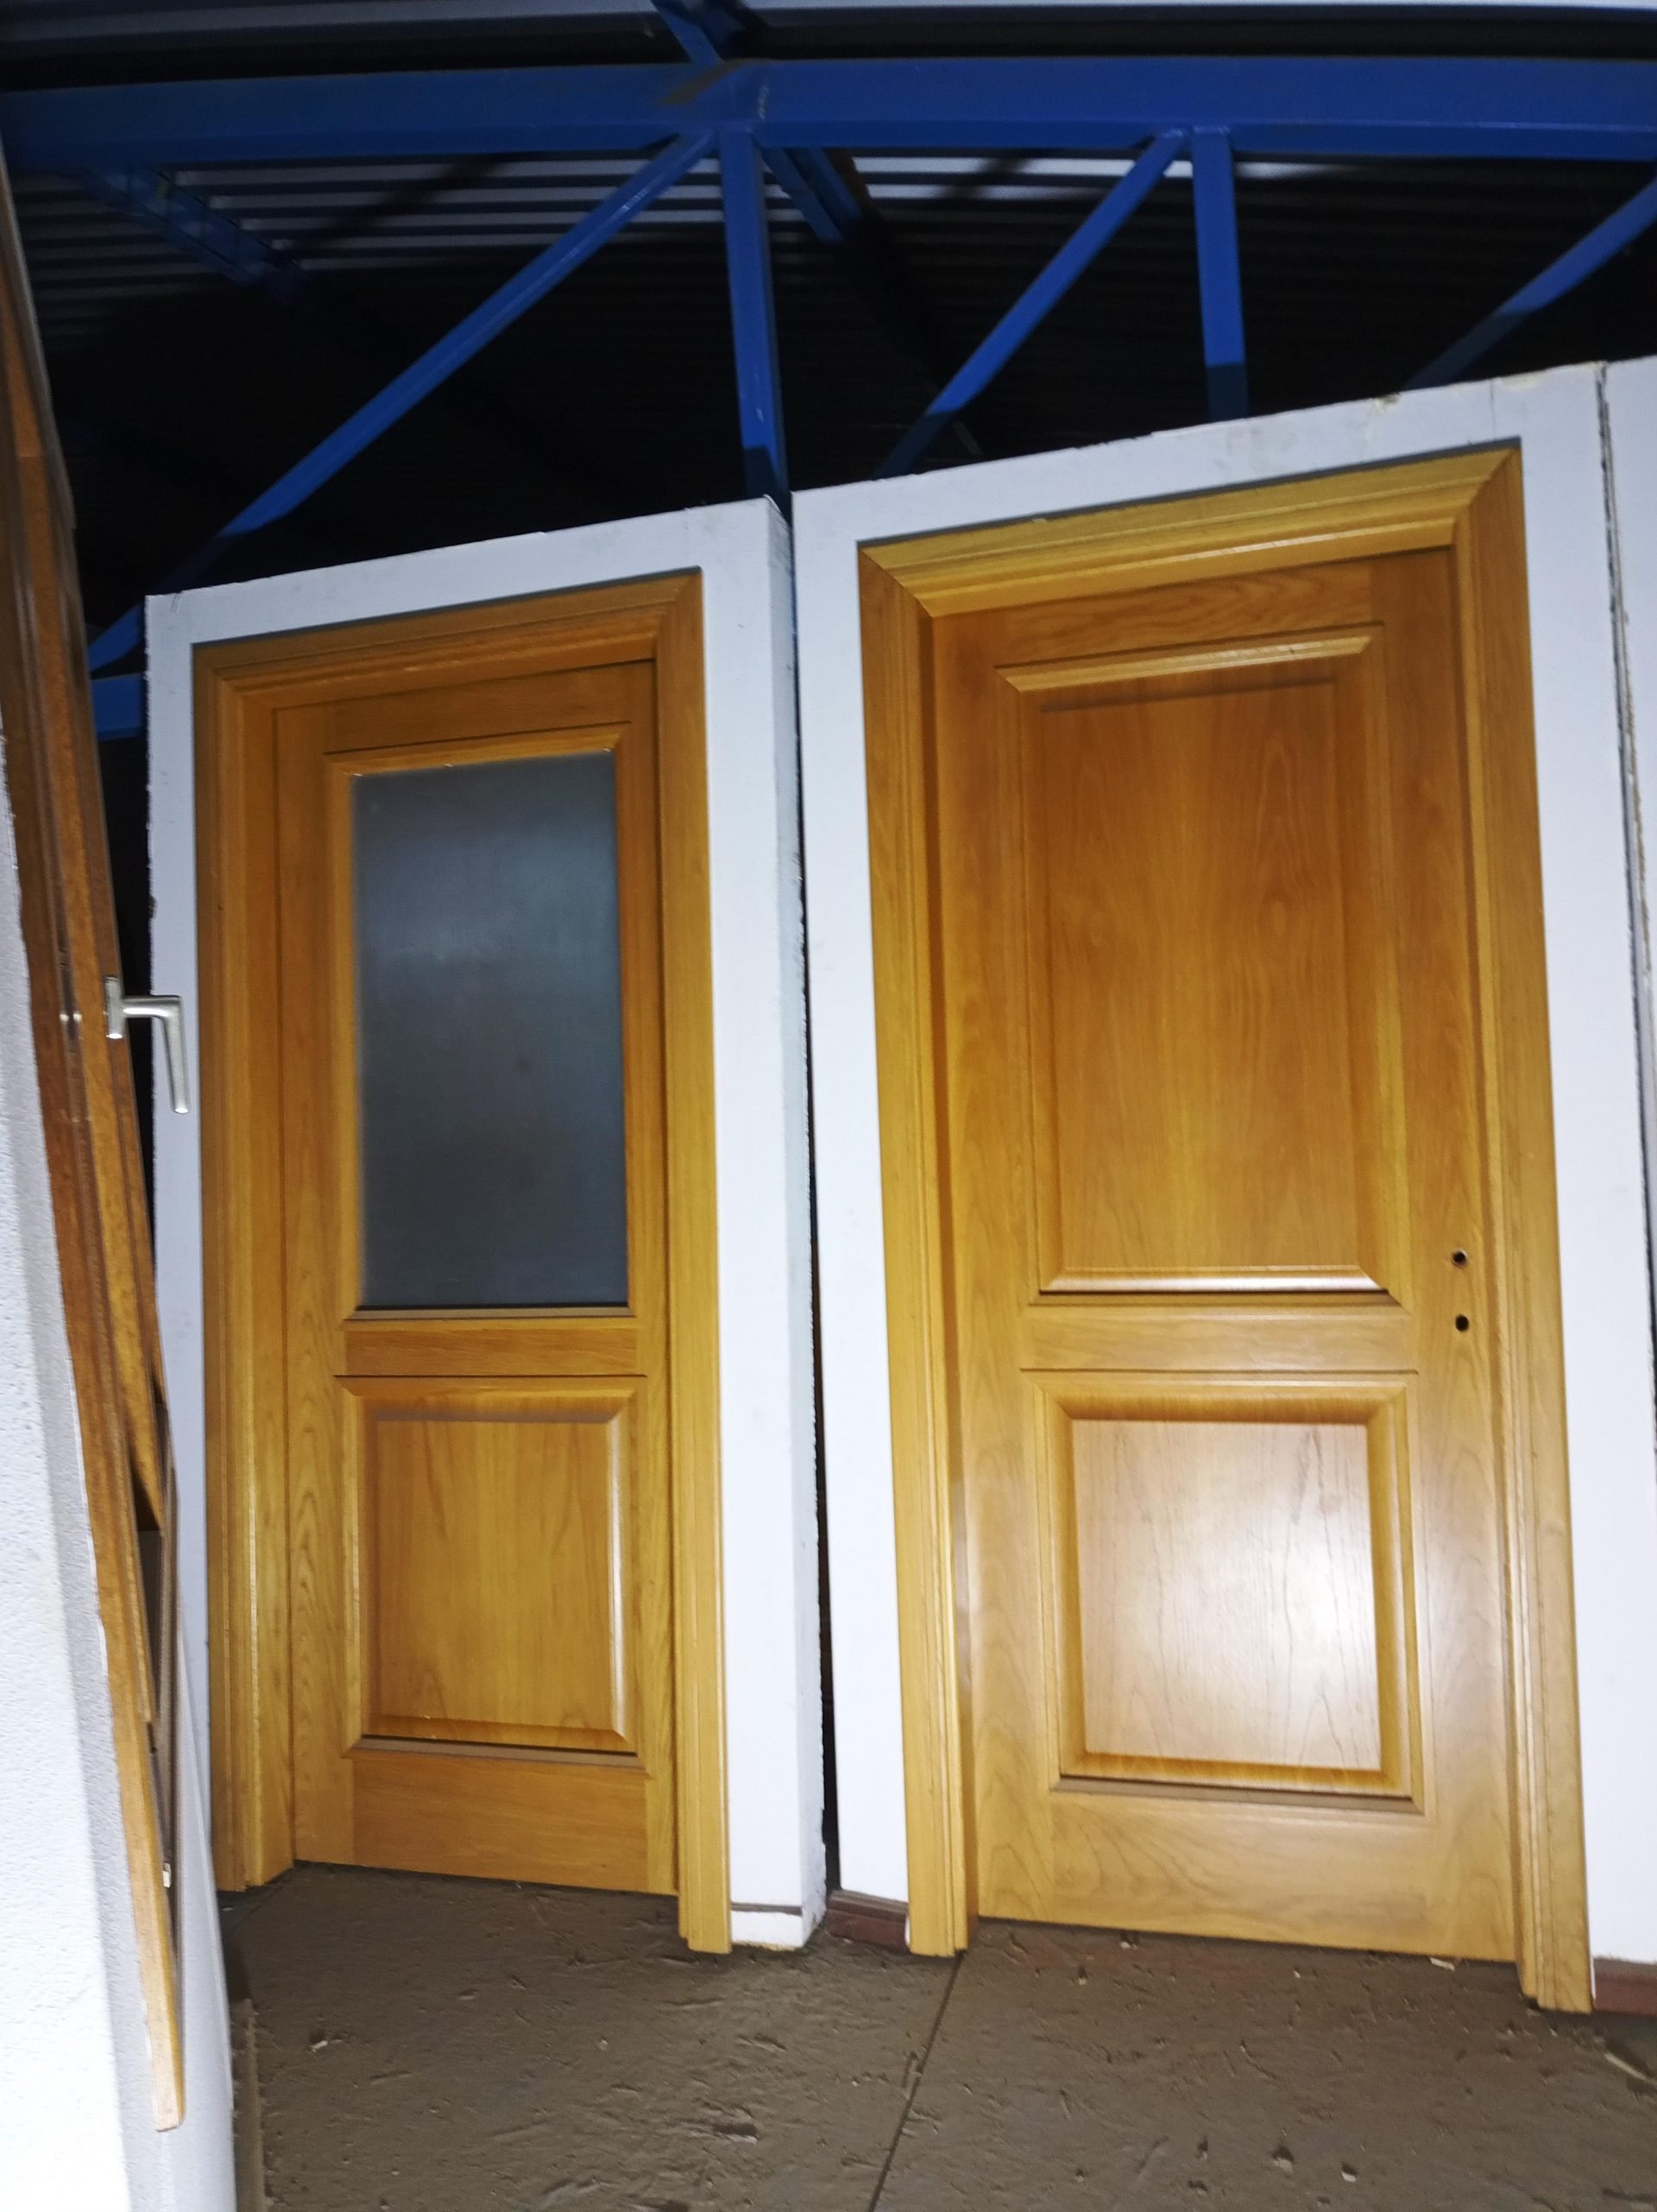 Δείγματα ξύλινων πορτών με τζάμι ή ταμπλά